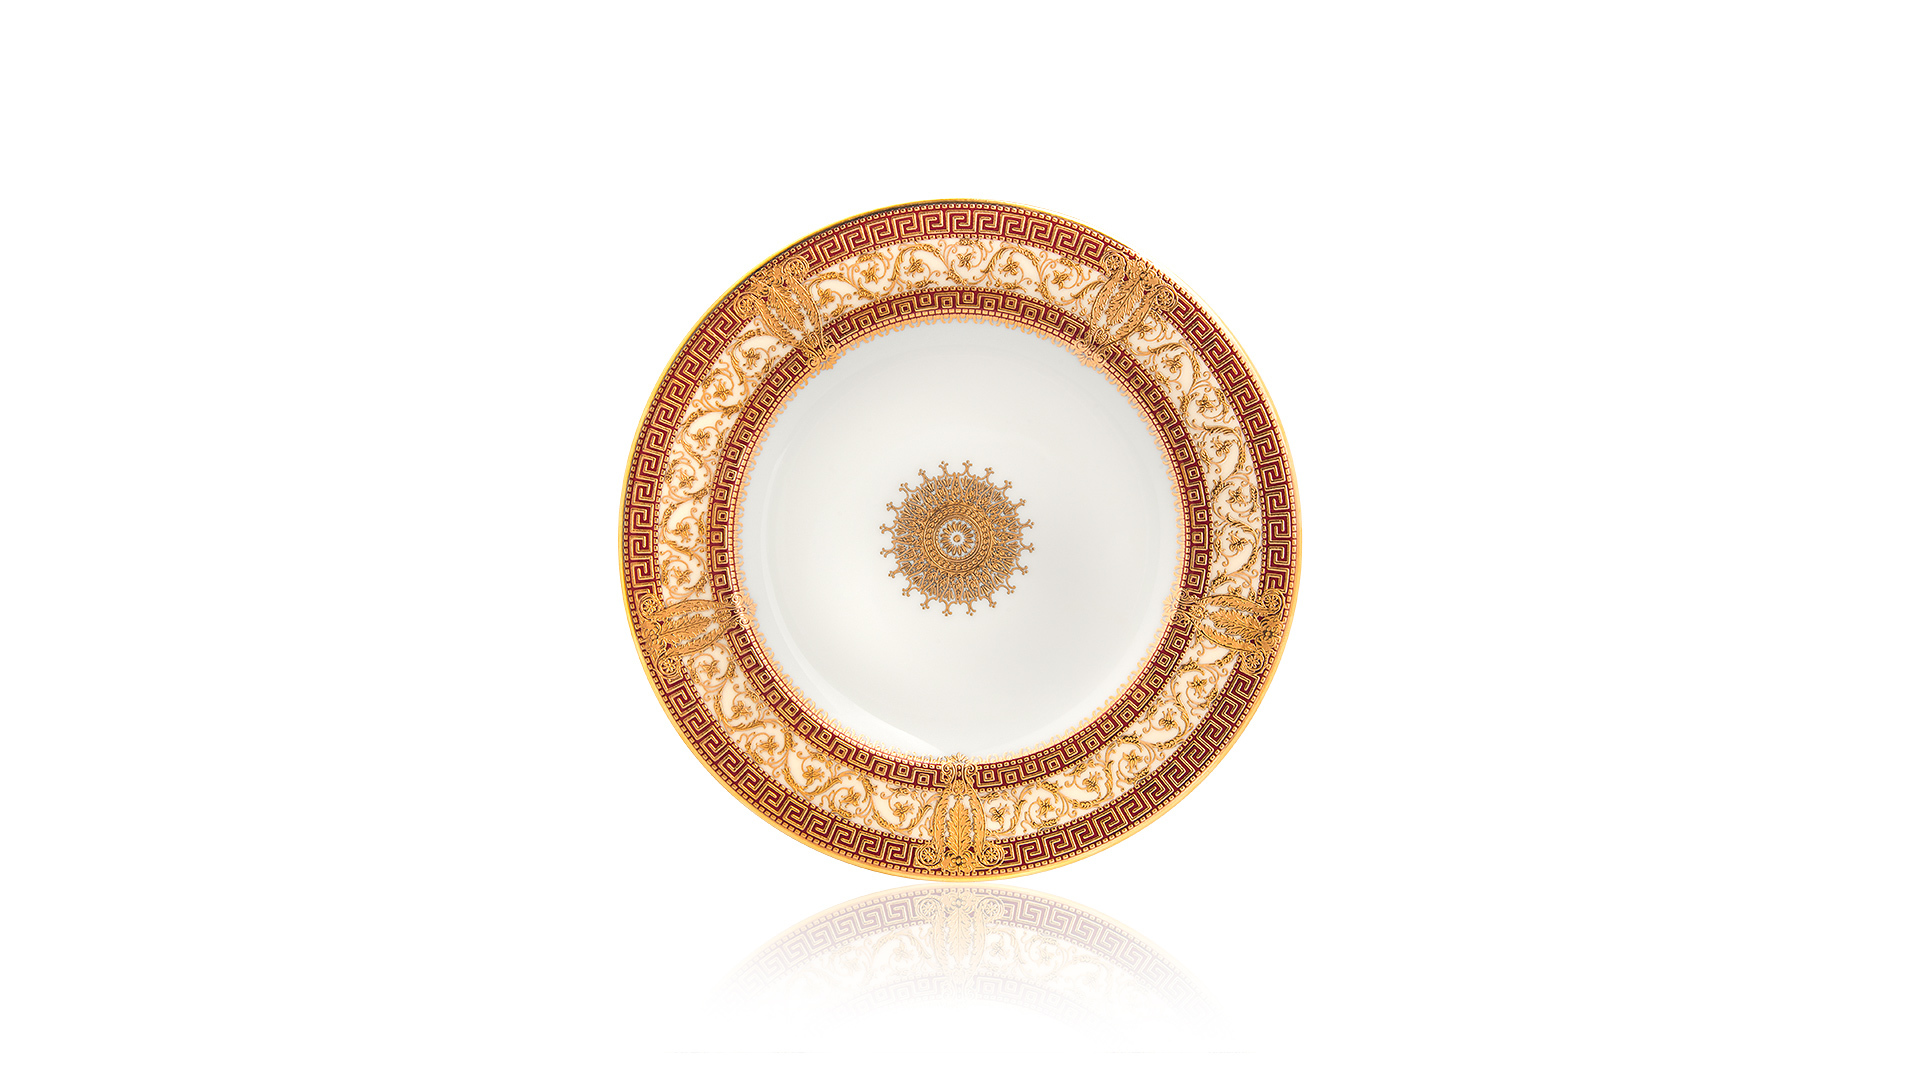 Тарелка десертная Haviland Салон Мюрат 16 см, вишневый, золотой декор